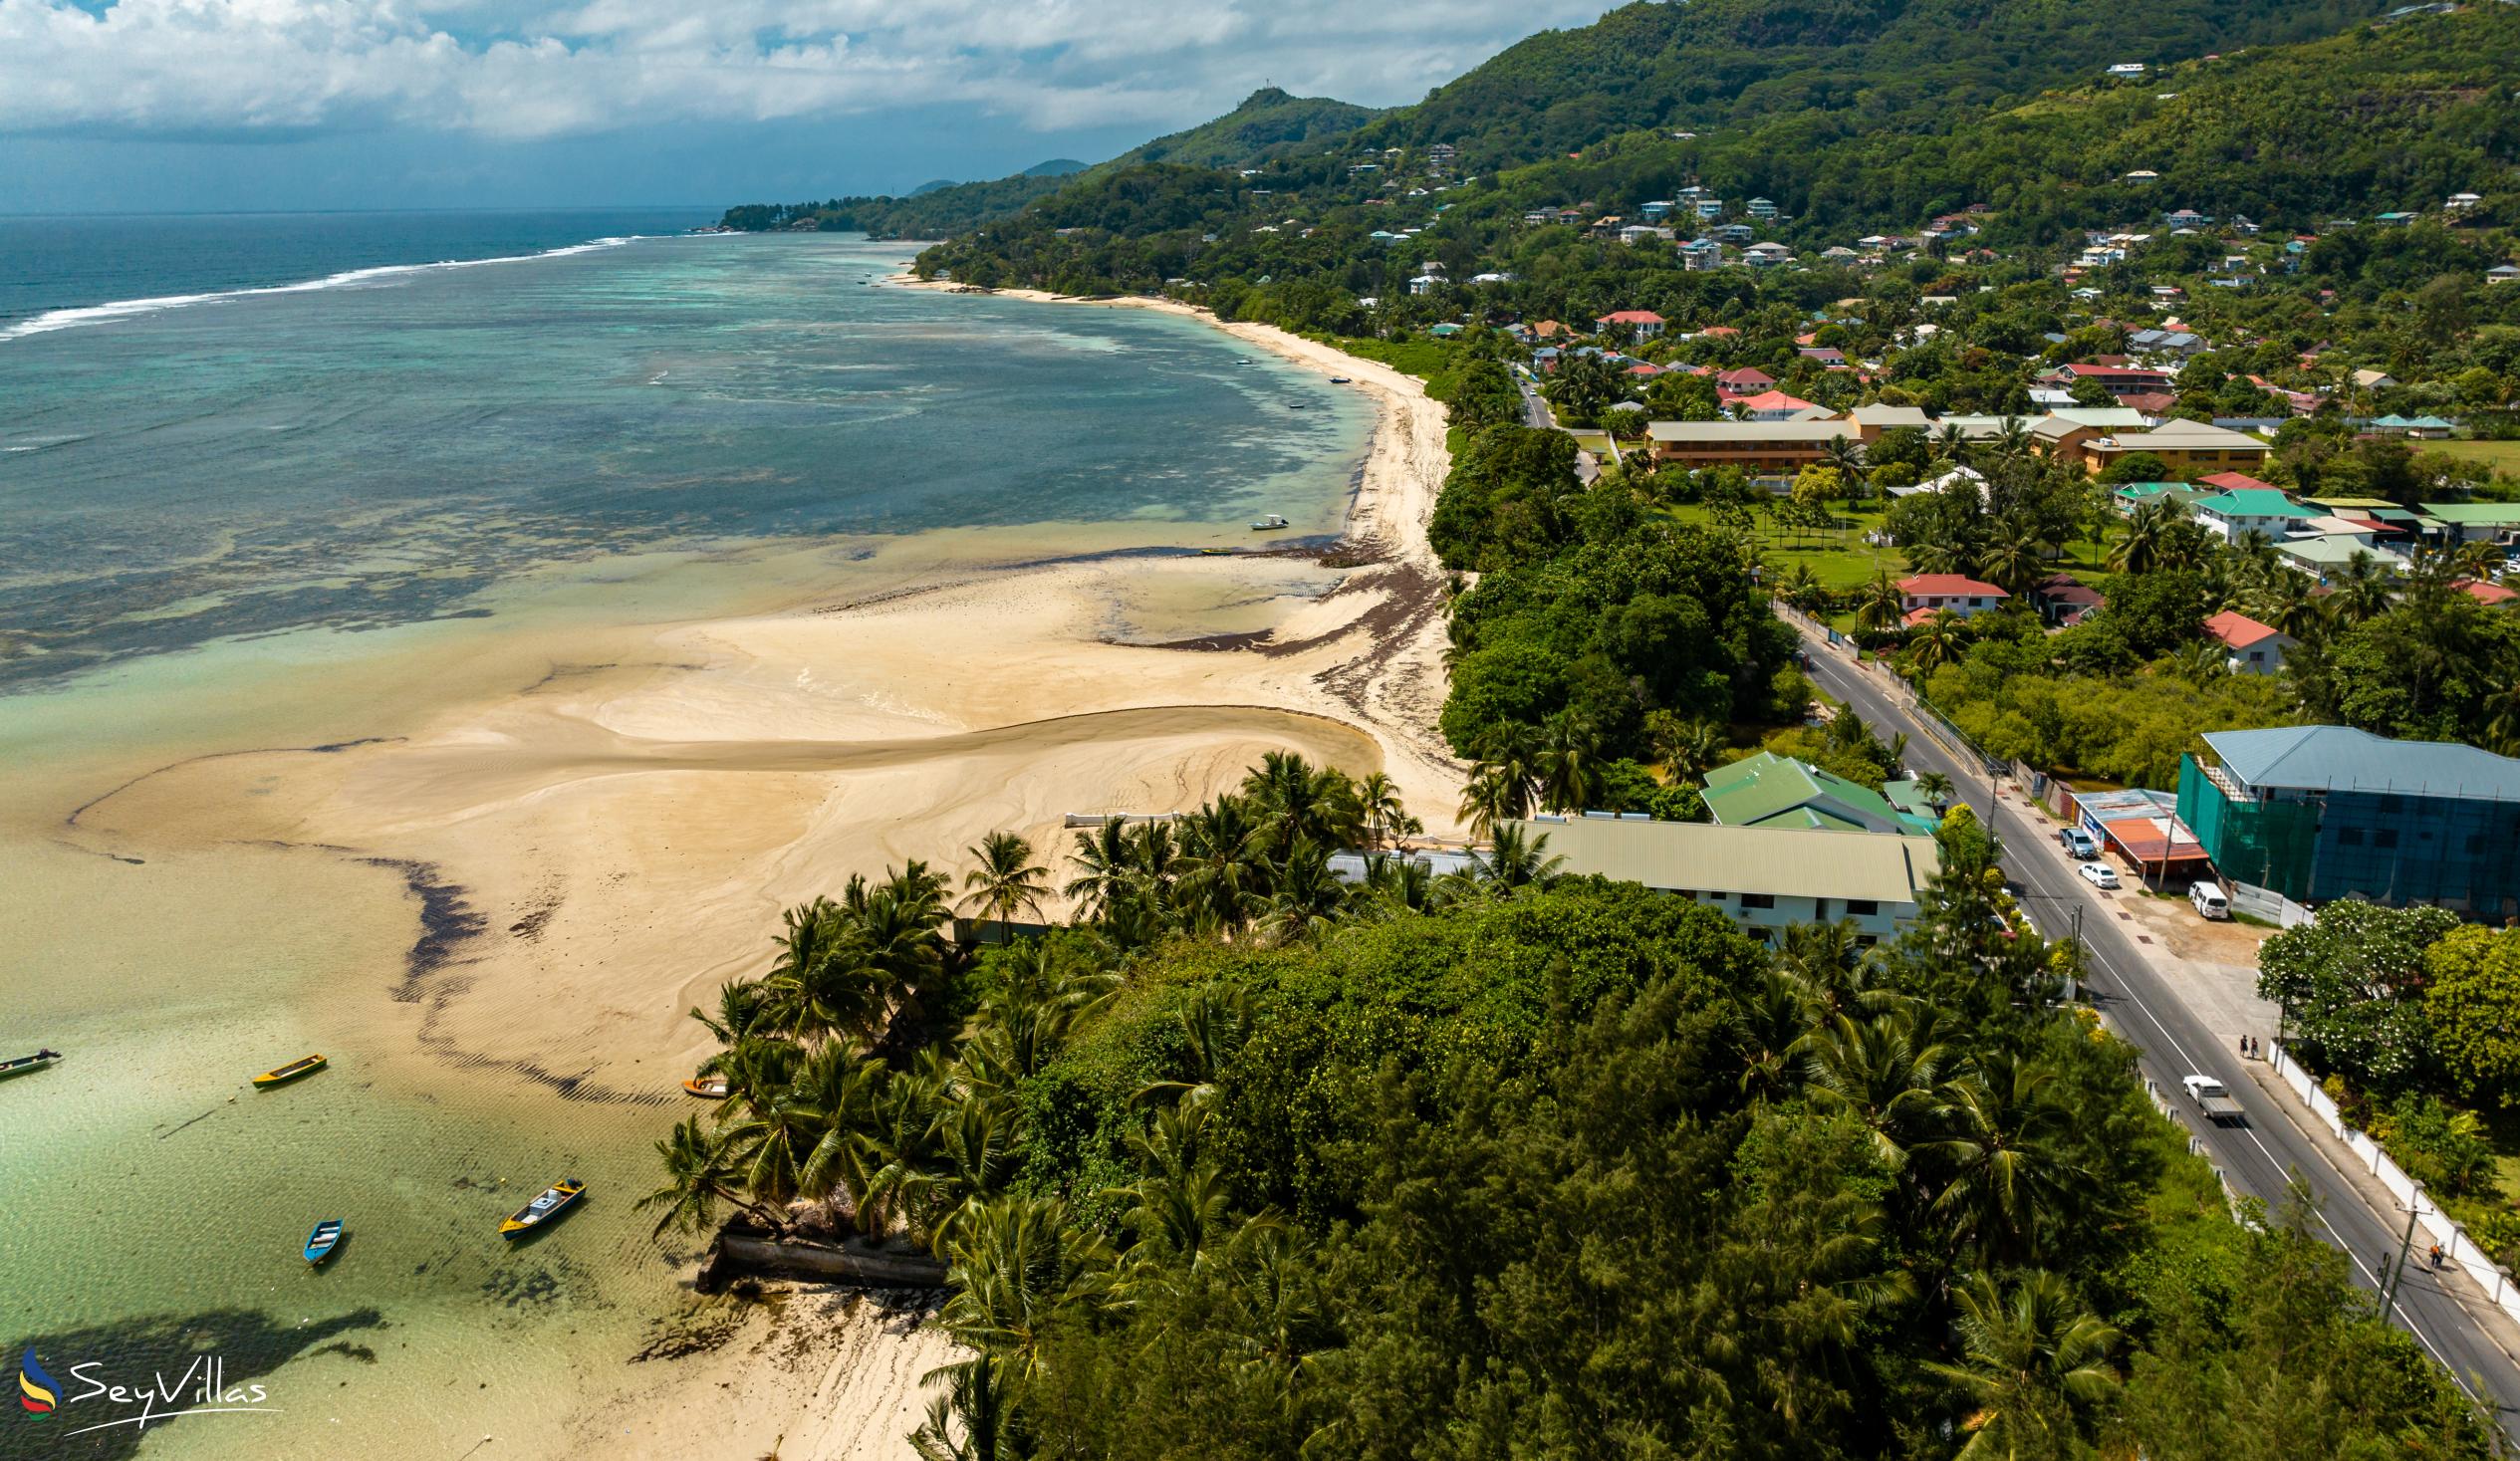 Foto 84: Hotel La Roussette - Location - Mahé (Seychelles)